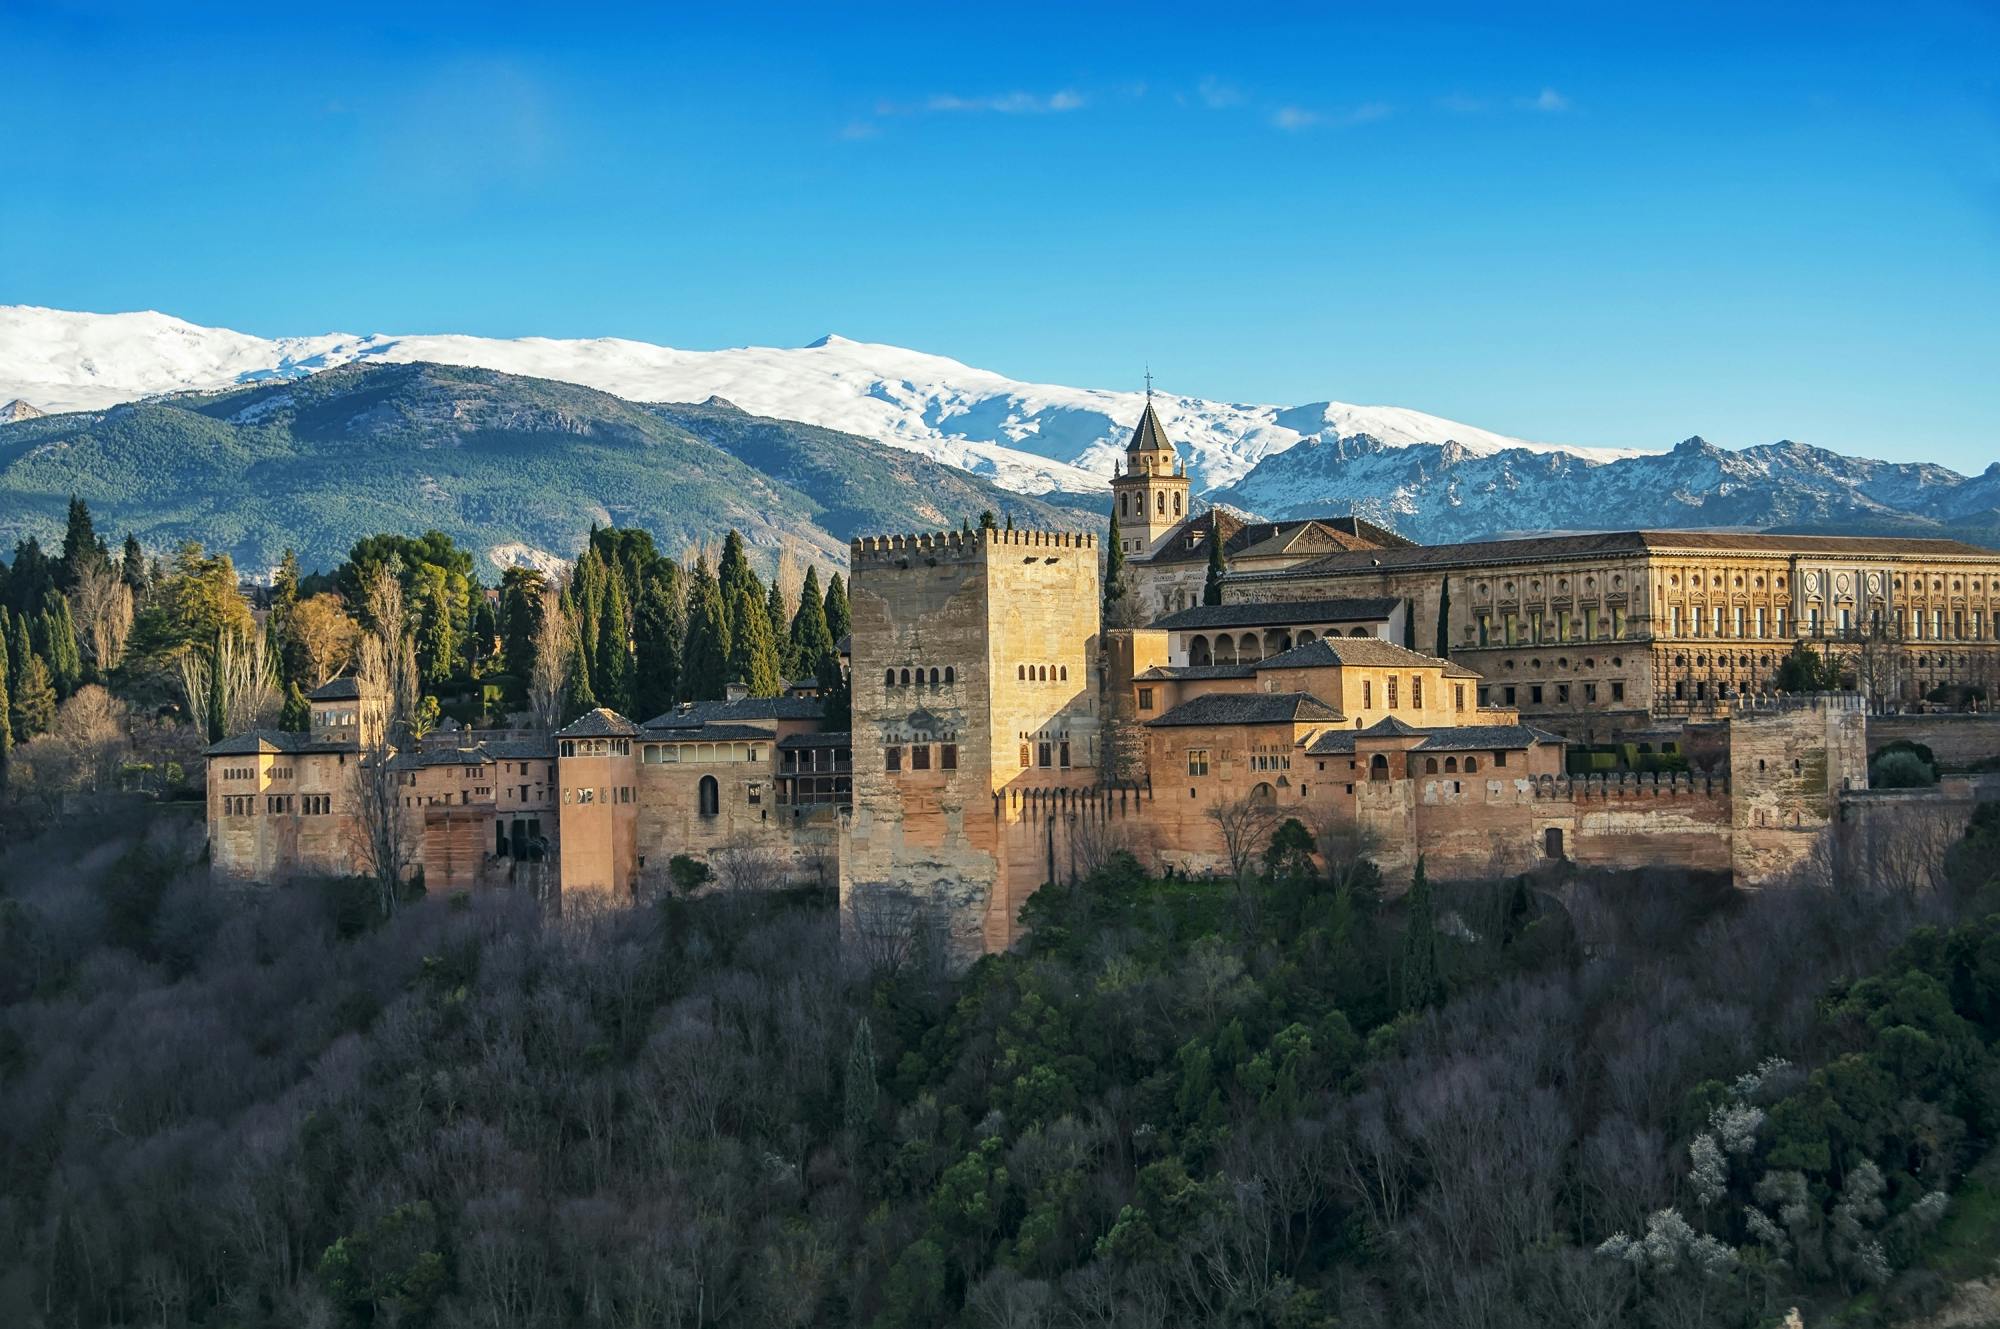 Alhambra y Generalife Tour Premium in Español